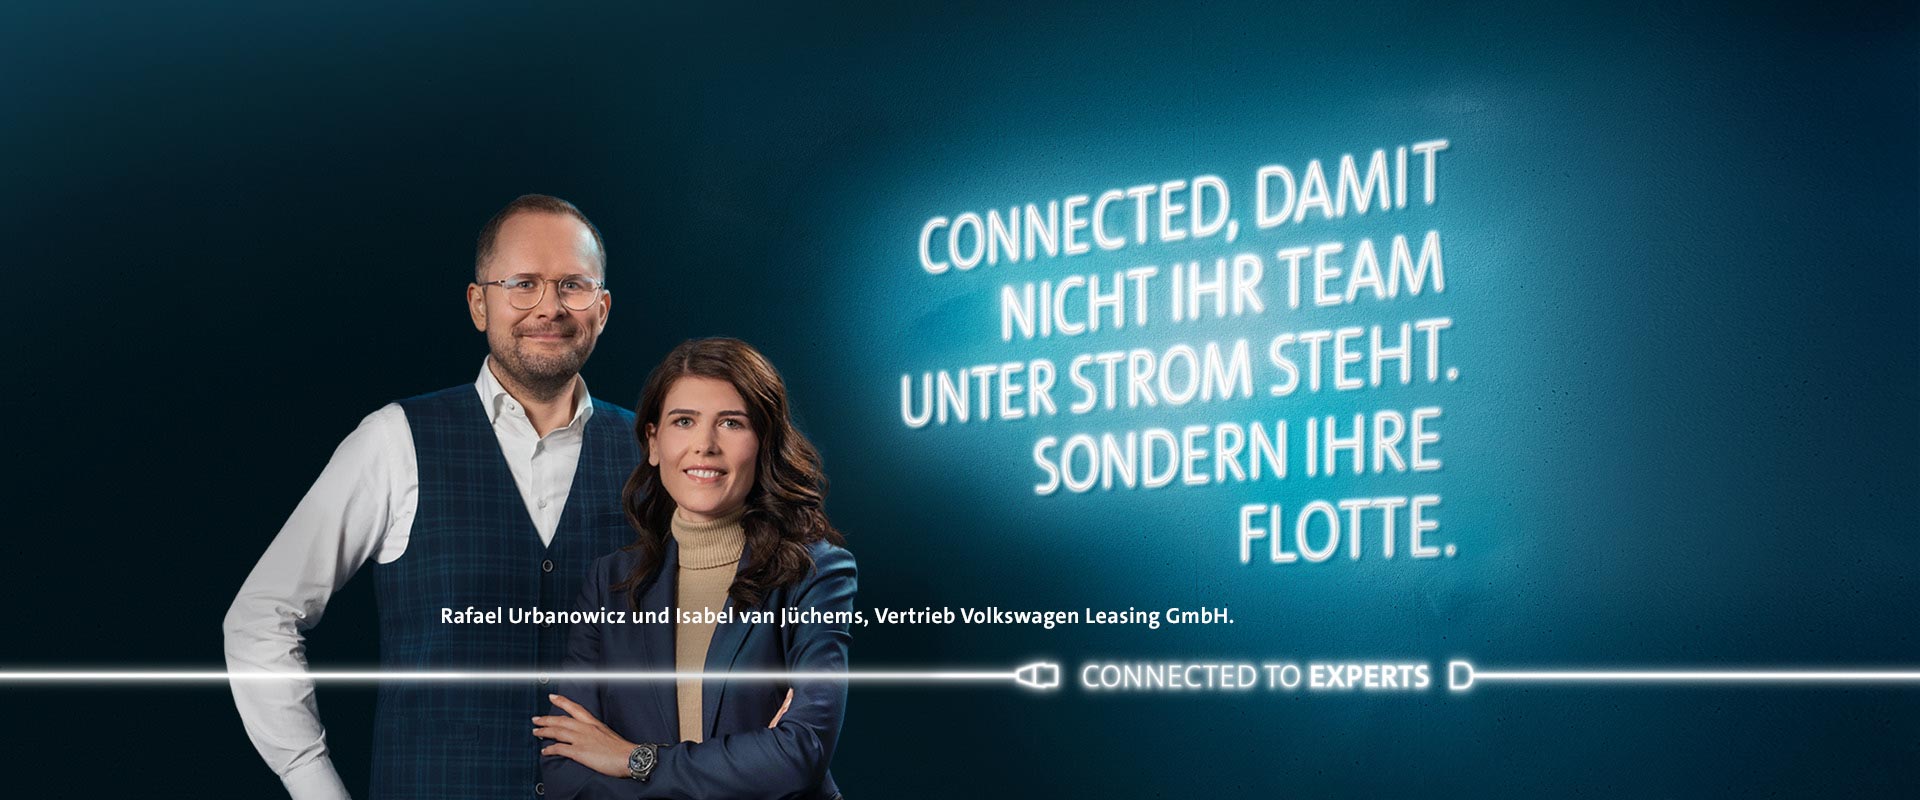 Rafael Urbanowicz und Isabel van Jüchems, Vertrieb Volkswagen Leasing GmbH.